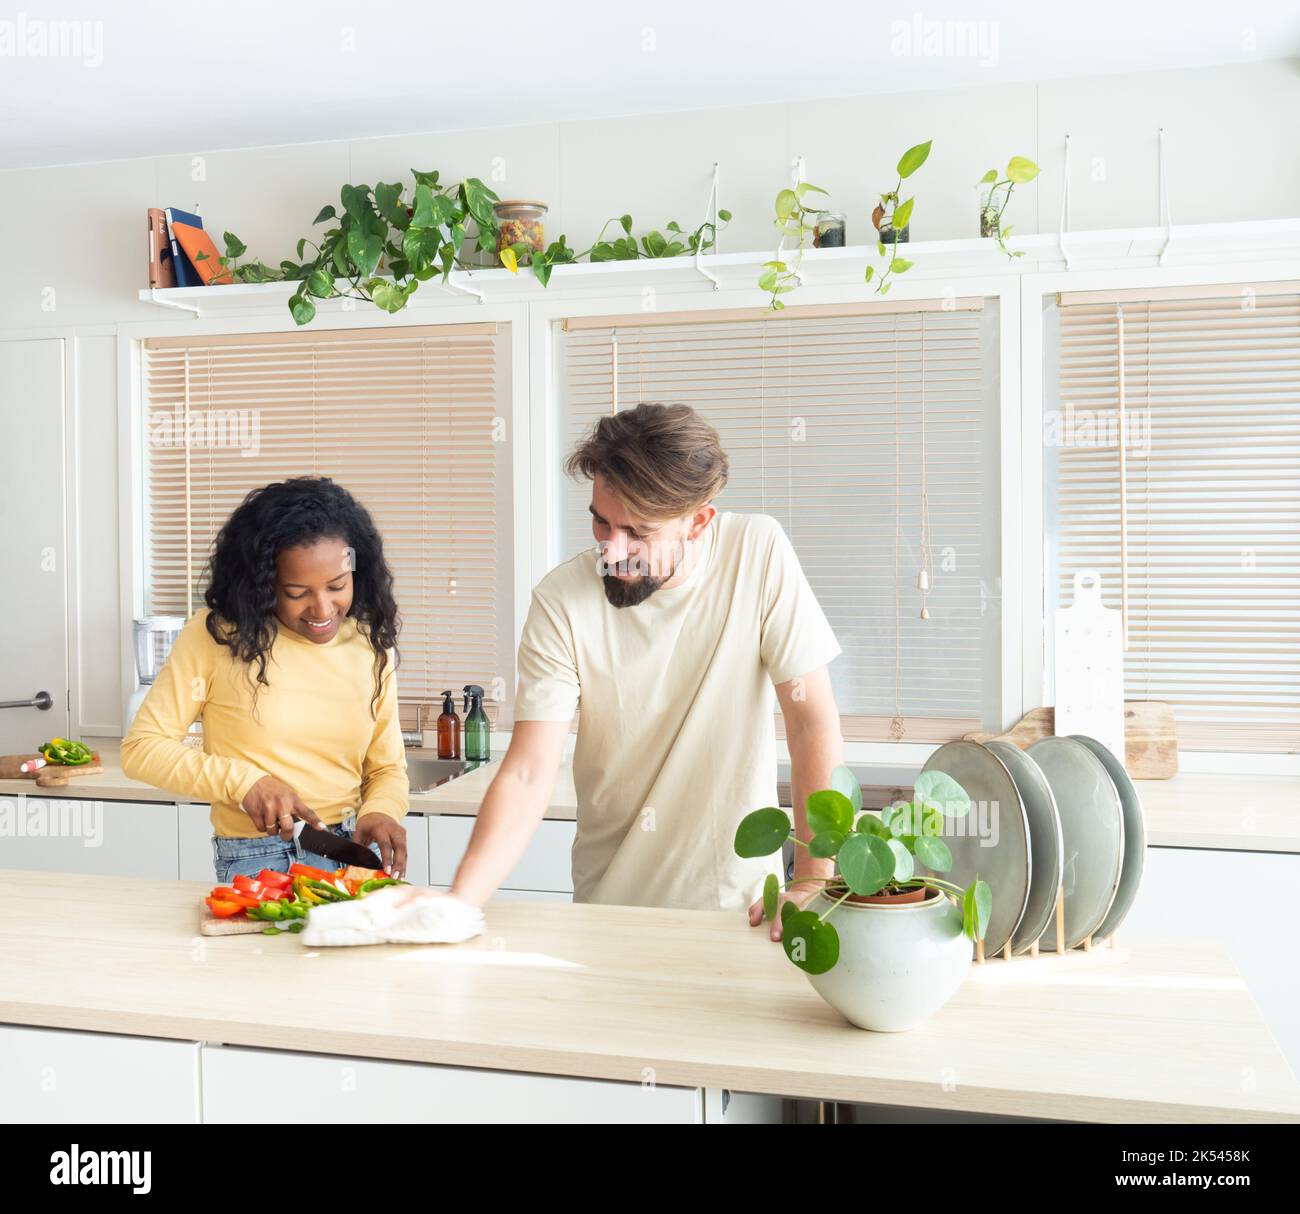 Junges multiethnisches Paar in der Küche beim Kochen und Putzen. Stockfoto